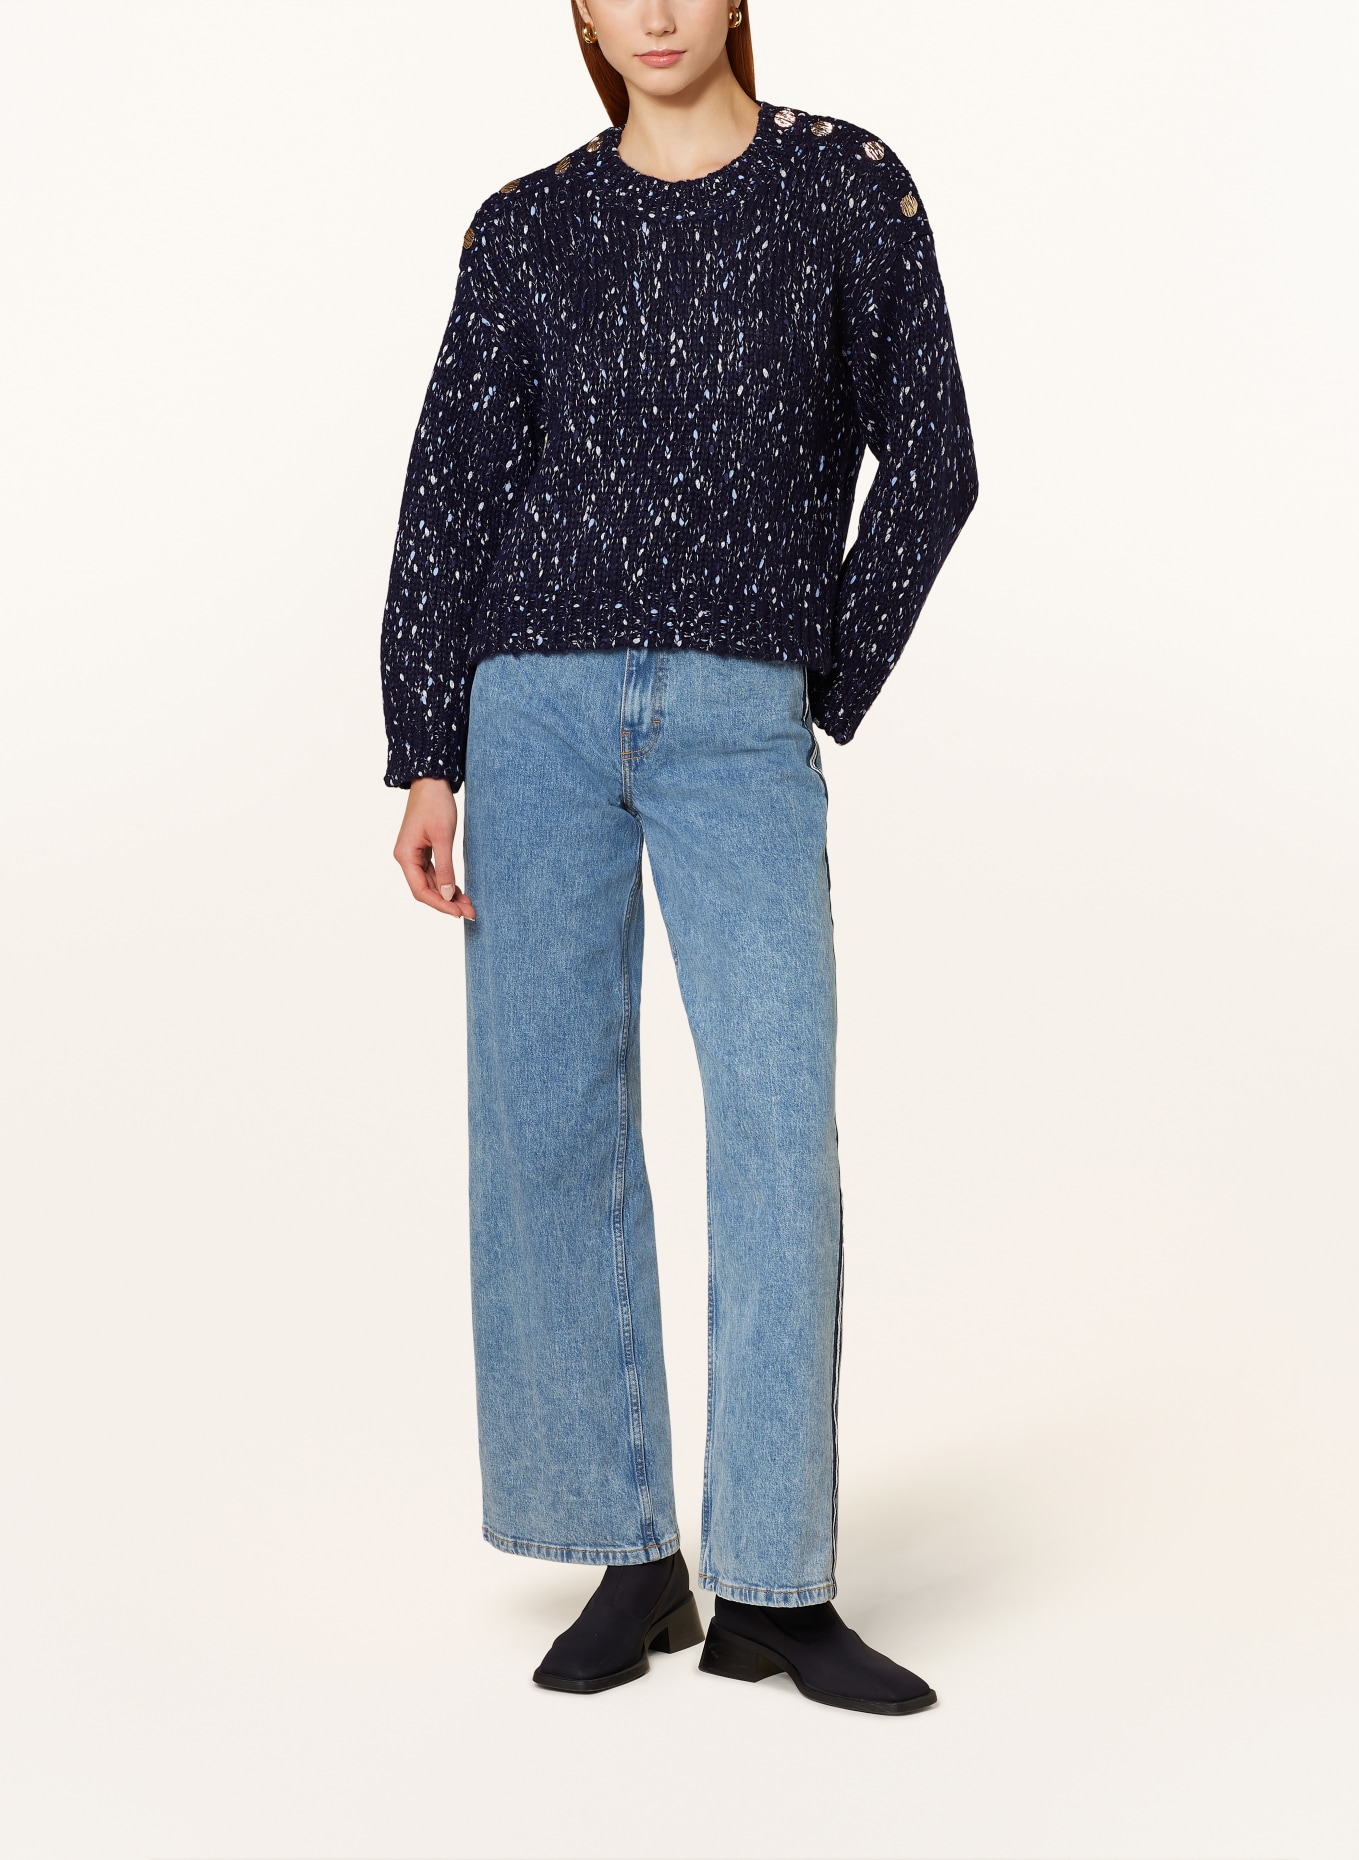 BAUM UND PFERDGARTEN Pullover CALLIE, Farbe: DUNKELBLAU/ SILBER/ HELLBLAU (Bild 2)